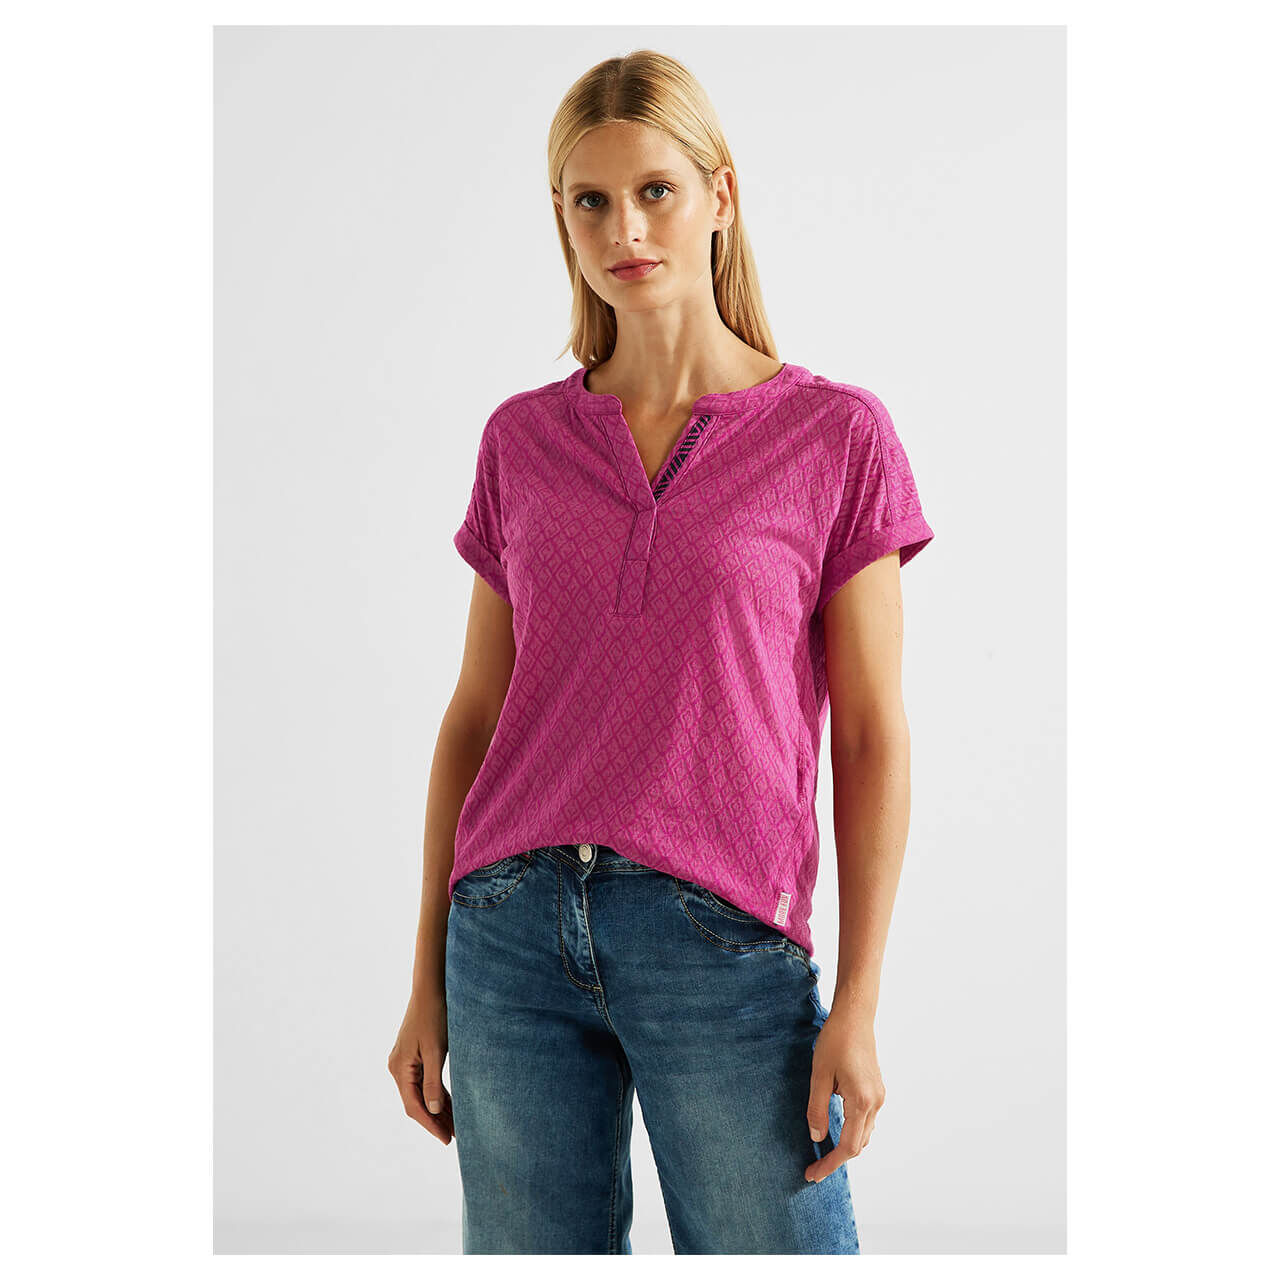 Cecil Minimal Rhombus T-Shirt cool pink